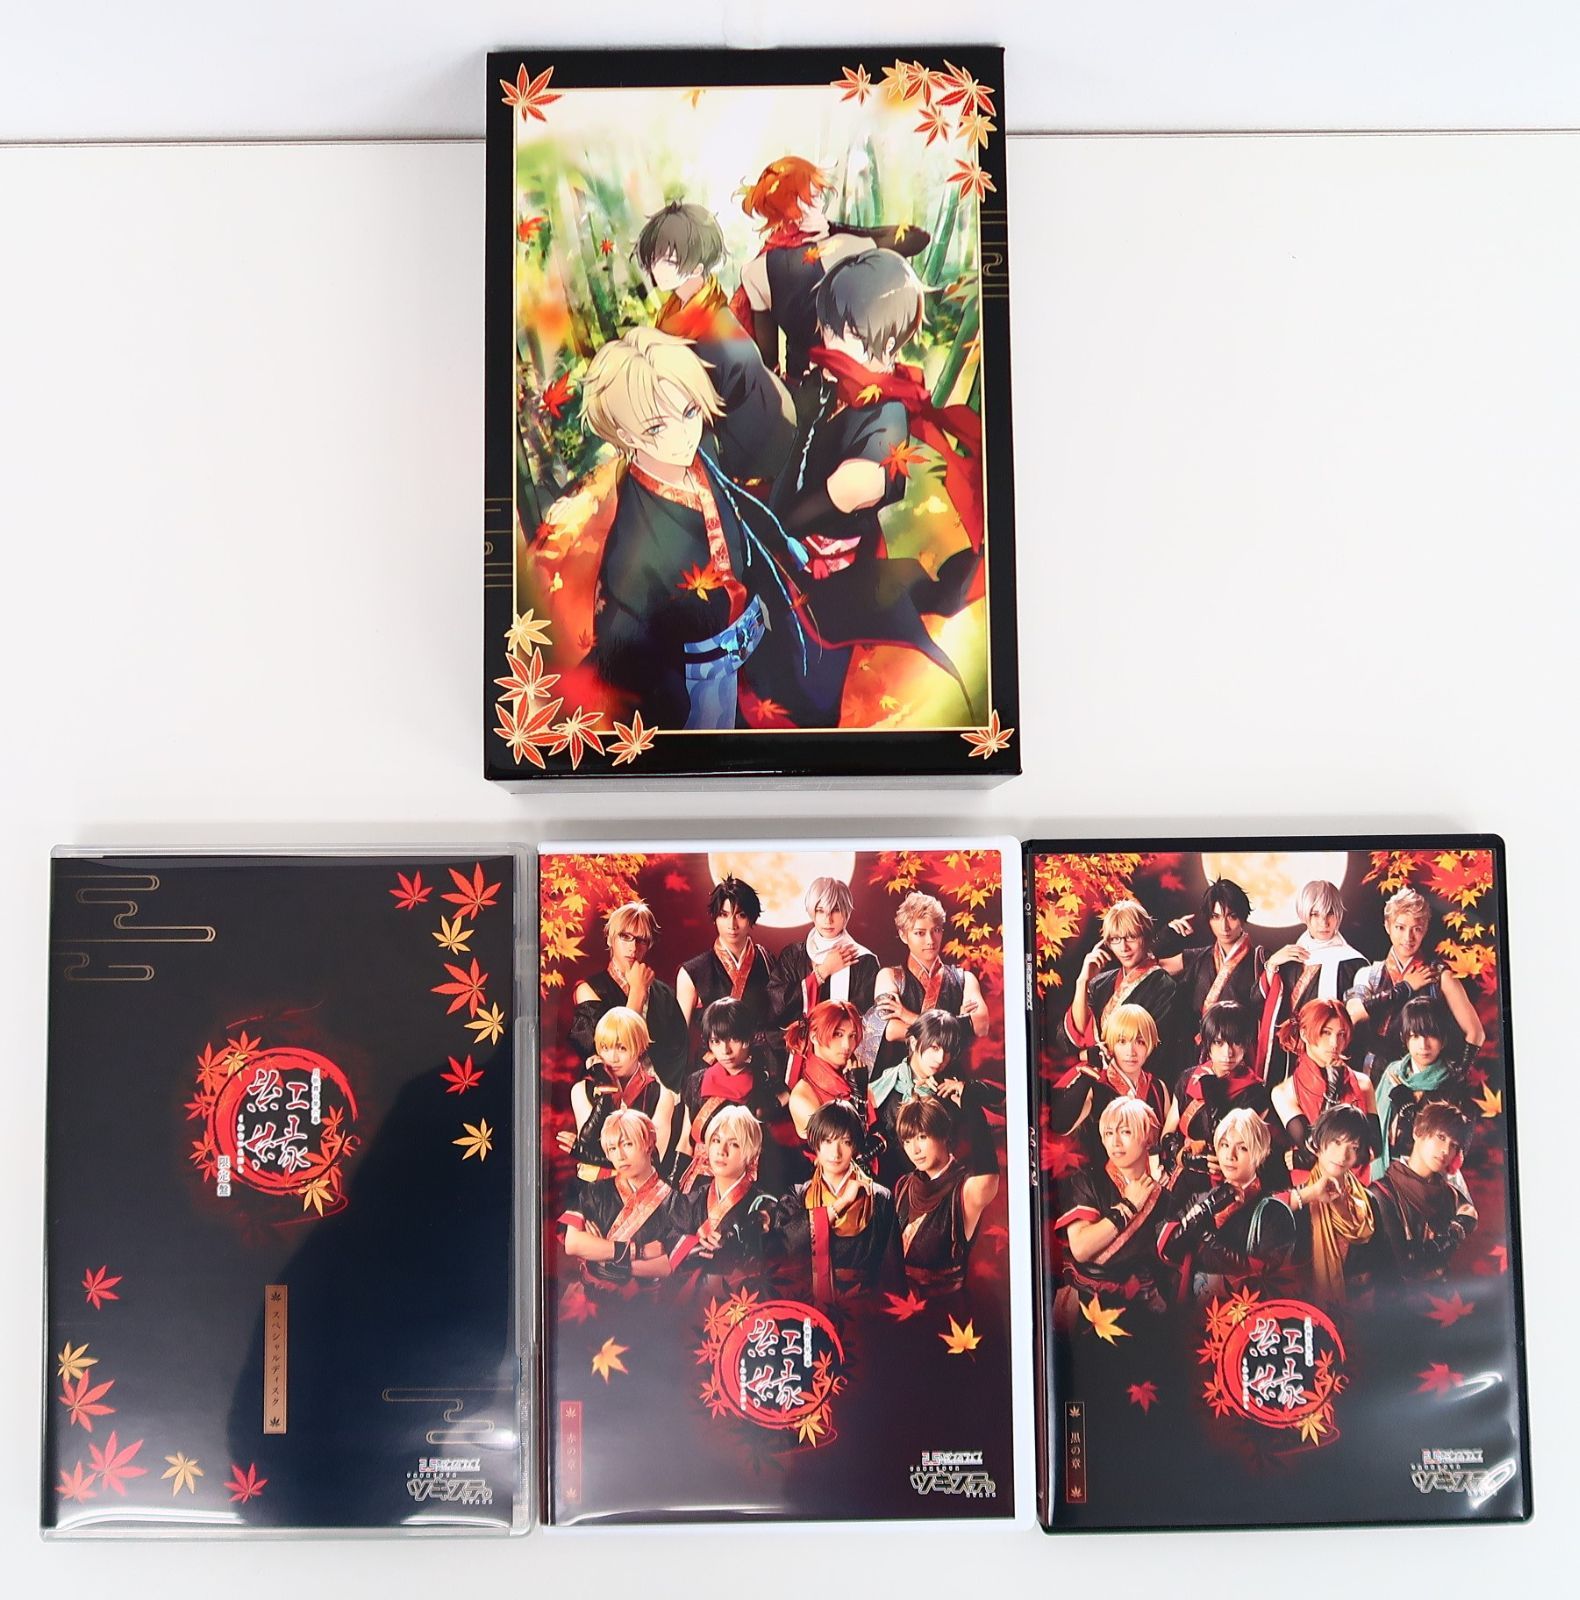 ツキステ。第6幕 紅縁 限定版【Blu-rayBOX】 - ミュージック